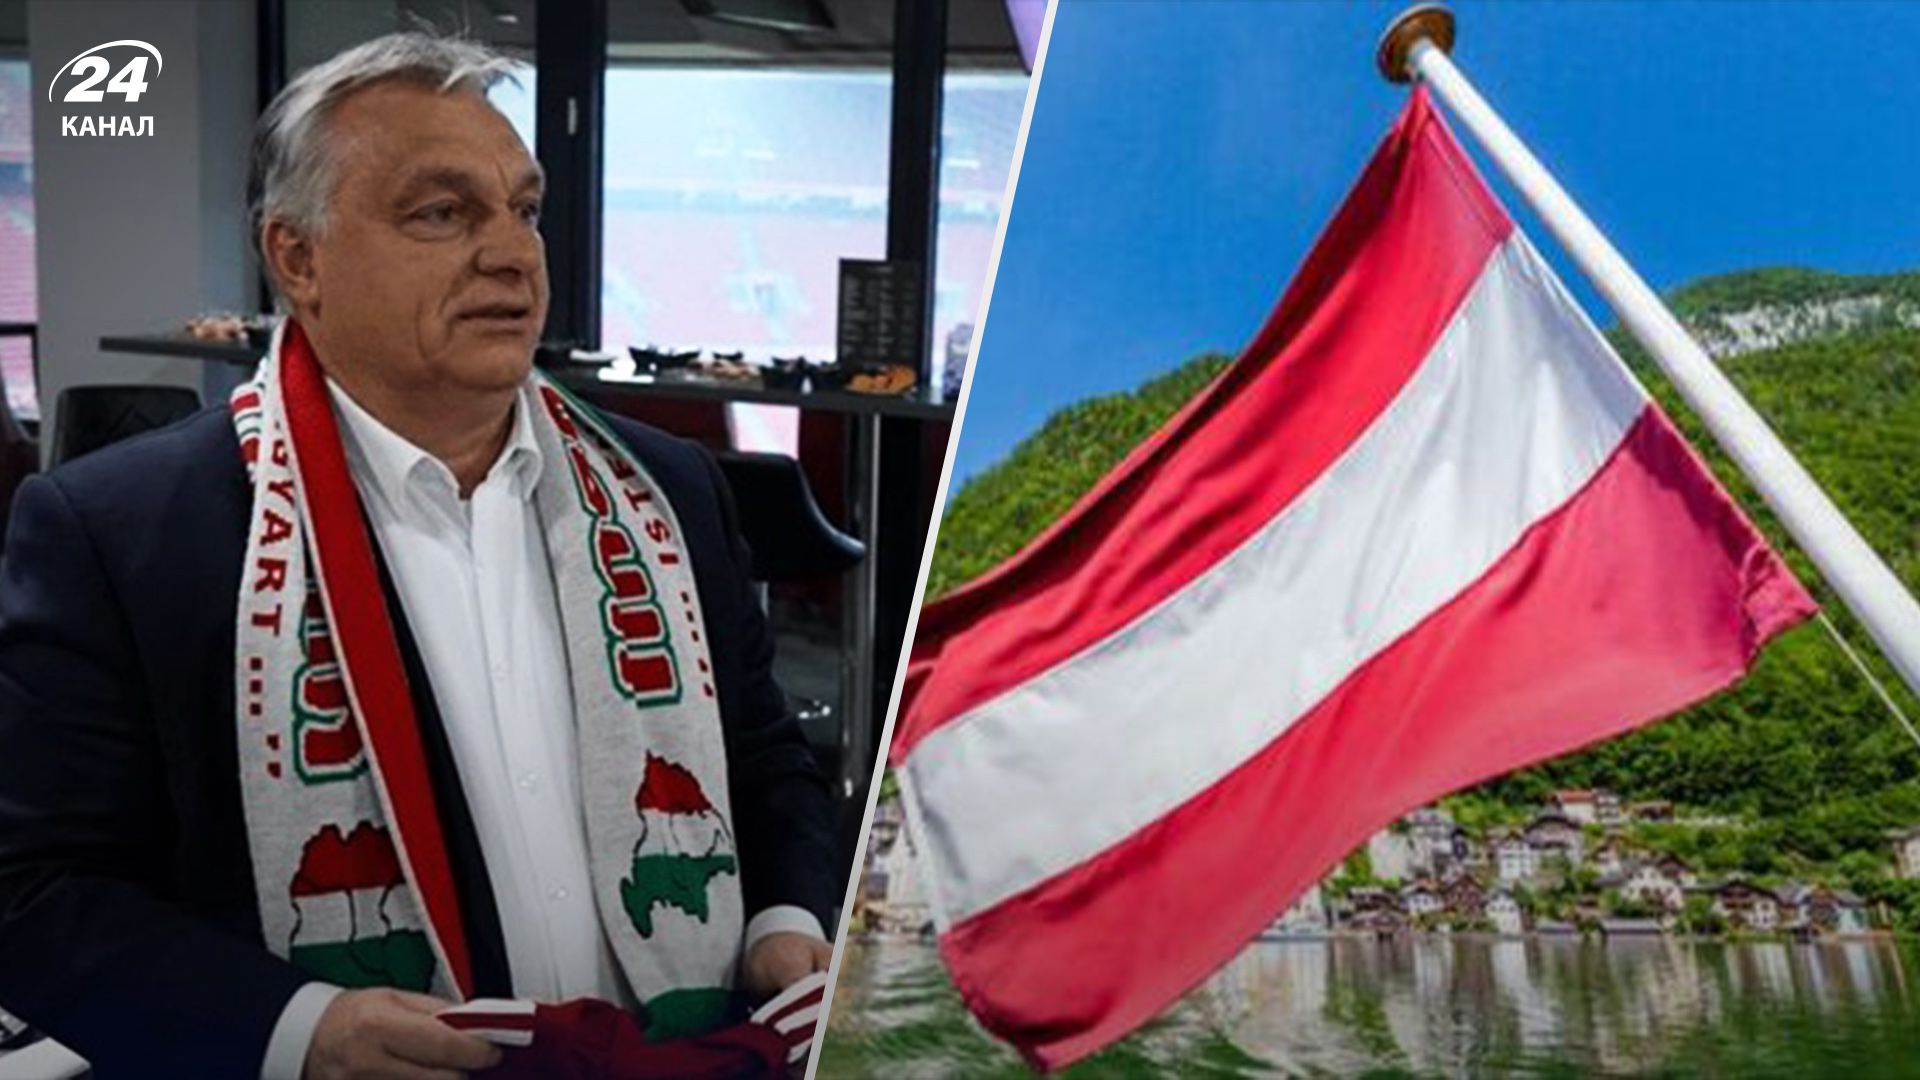 Австрія потролила Орбана через скандальний шарф